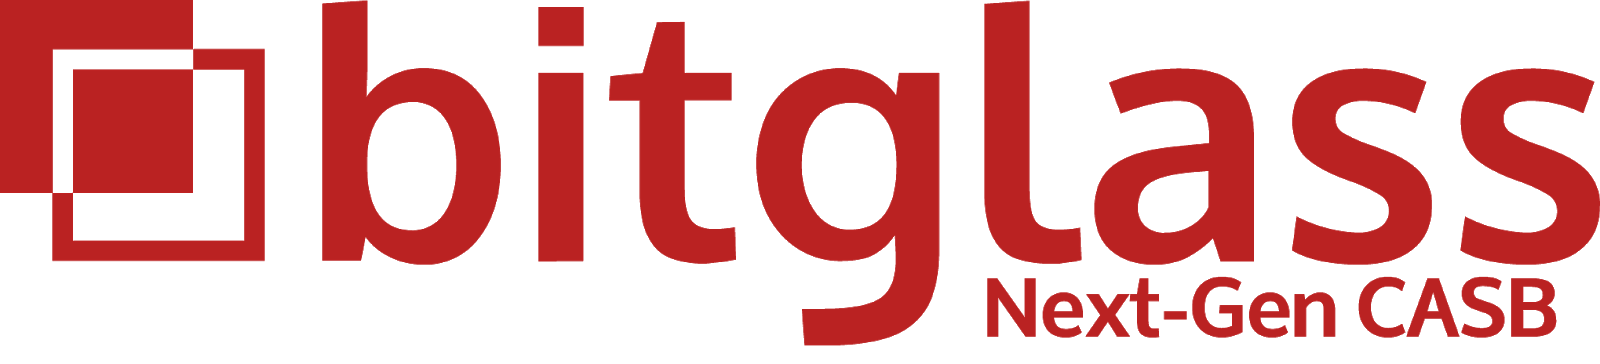 logo_with_next-gen_2018 (1)